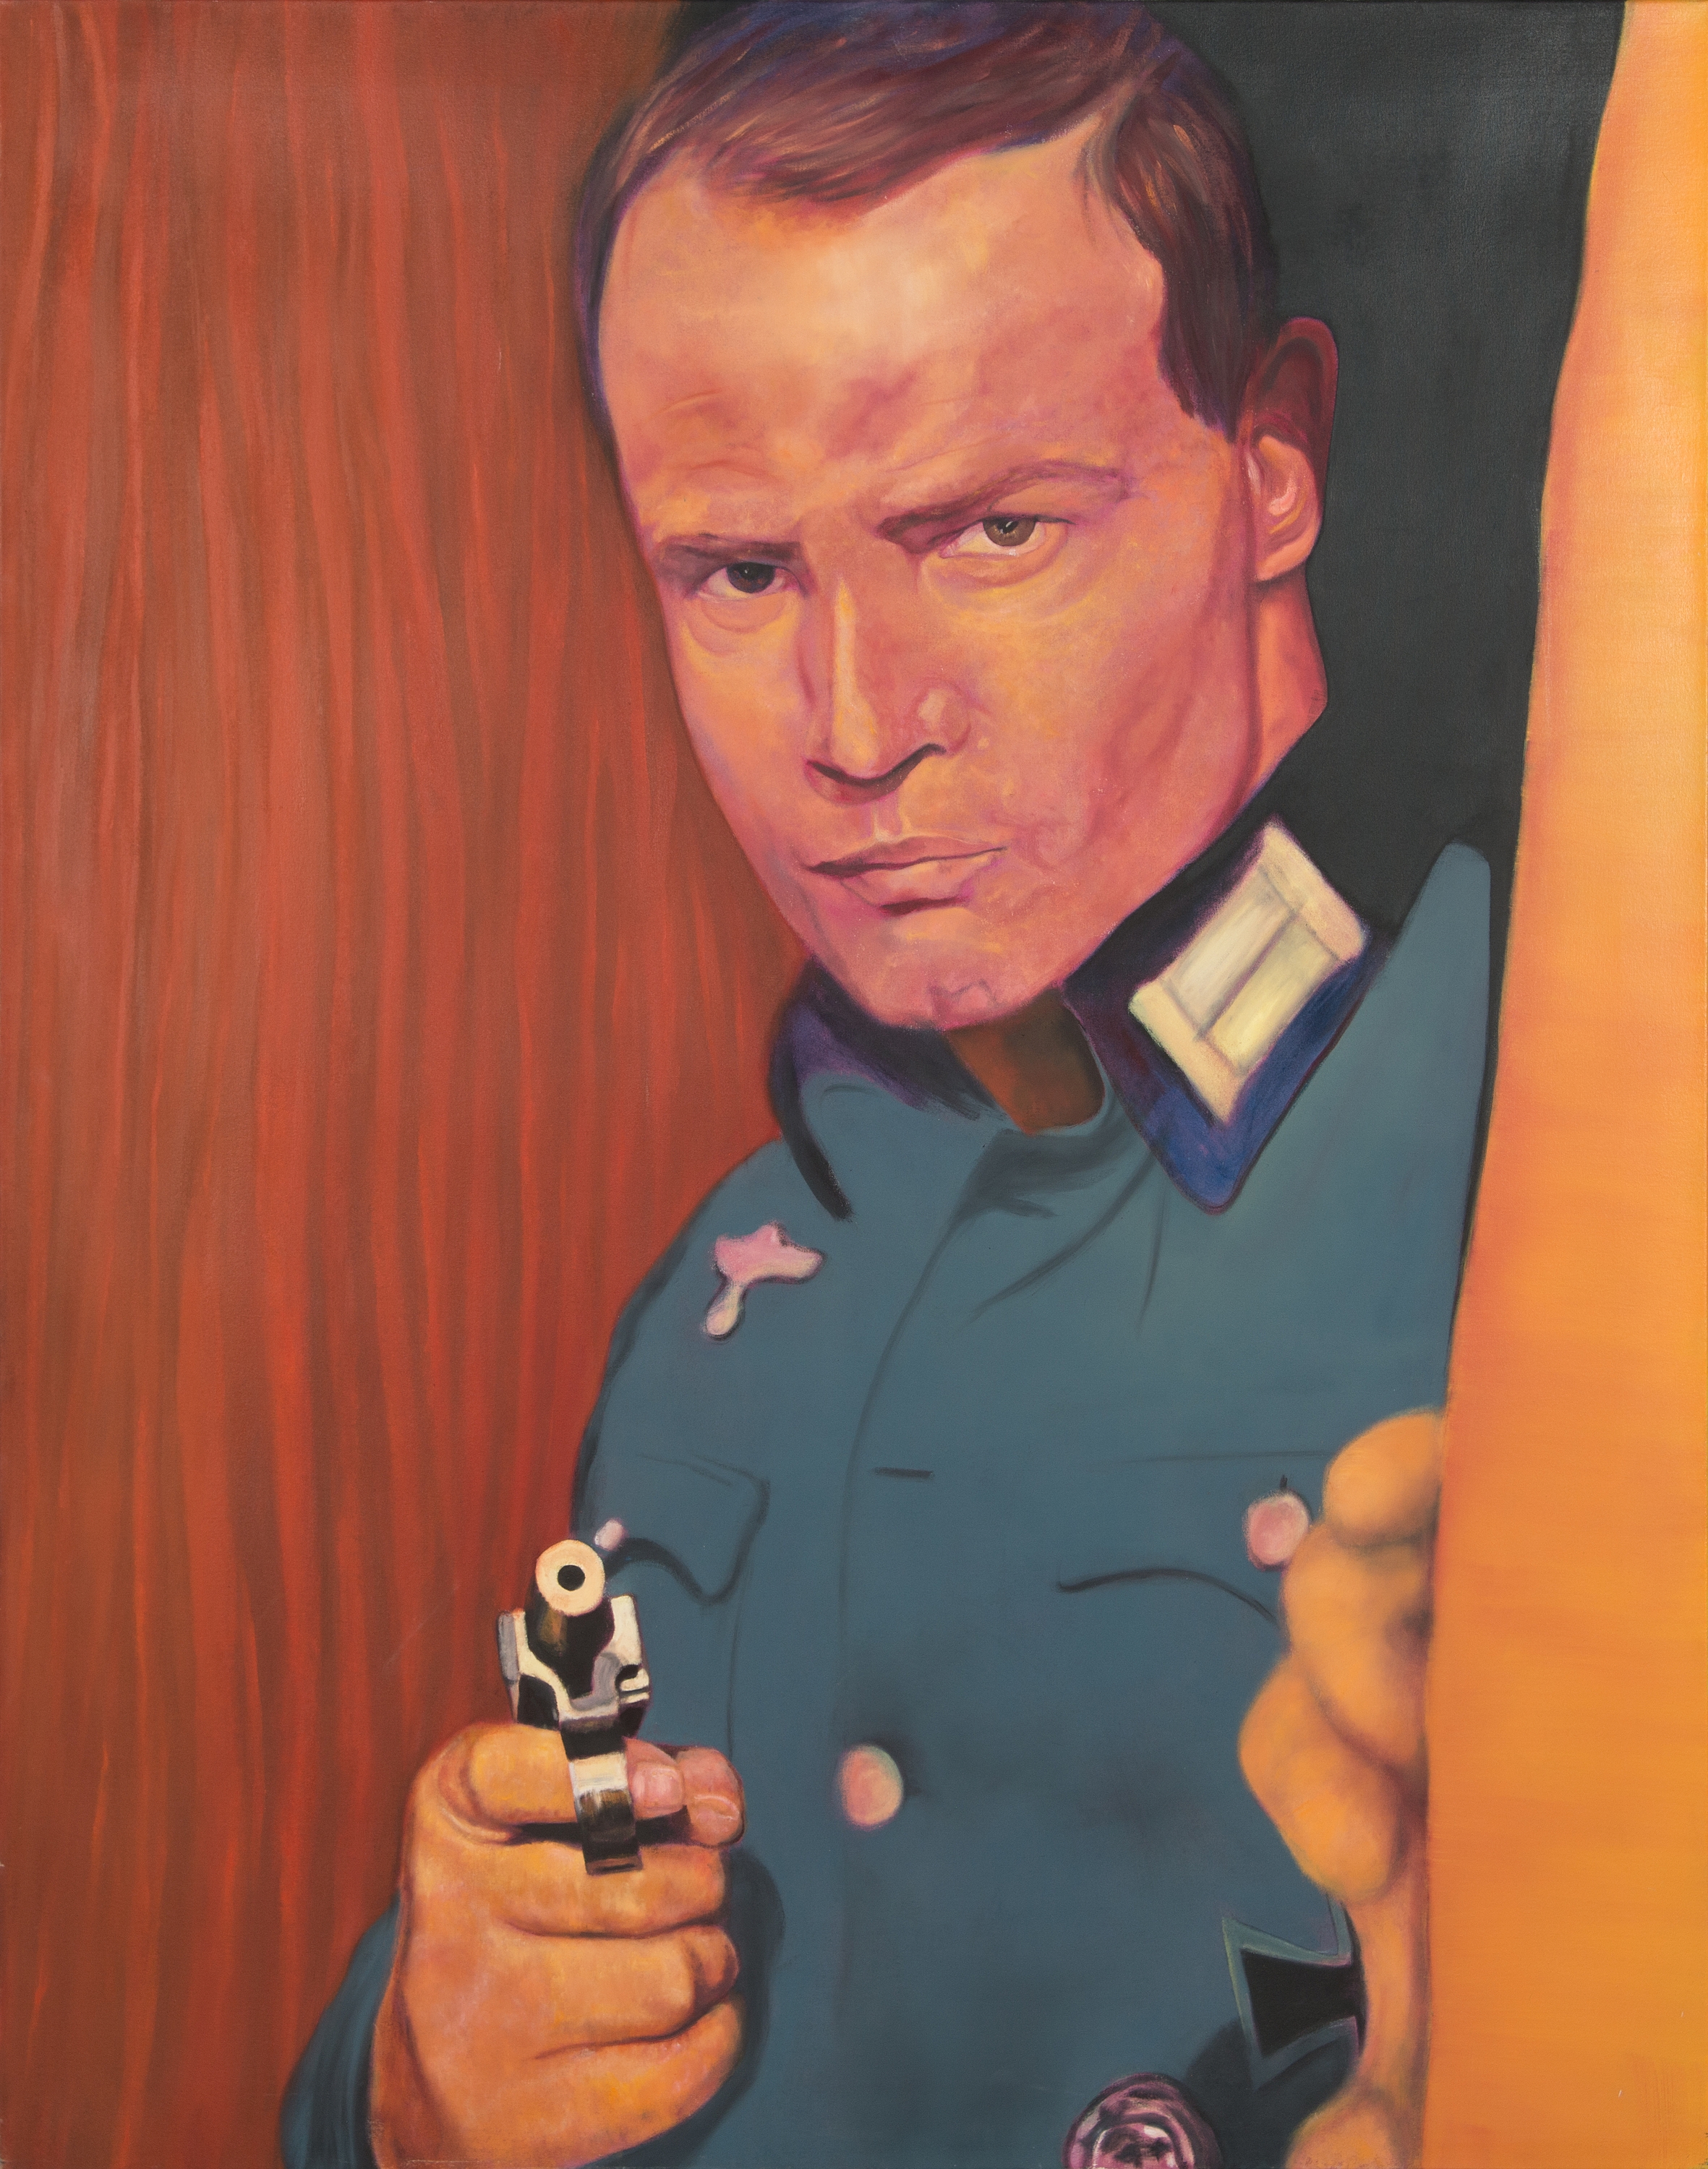 Artwork by Juha Hälikkä, "Marlon with the gun", Made of Oil on canvas